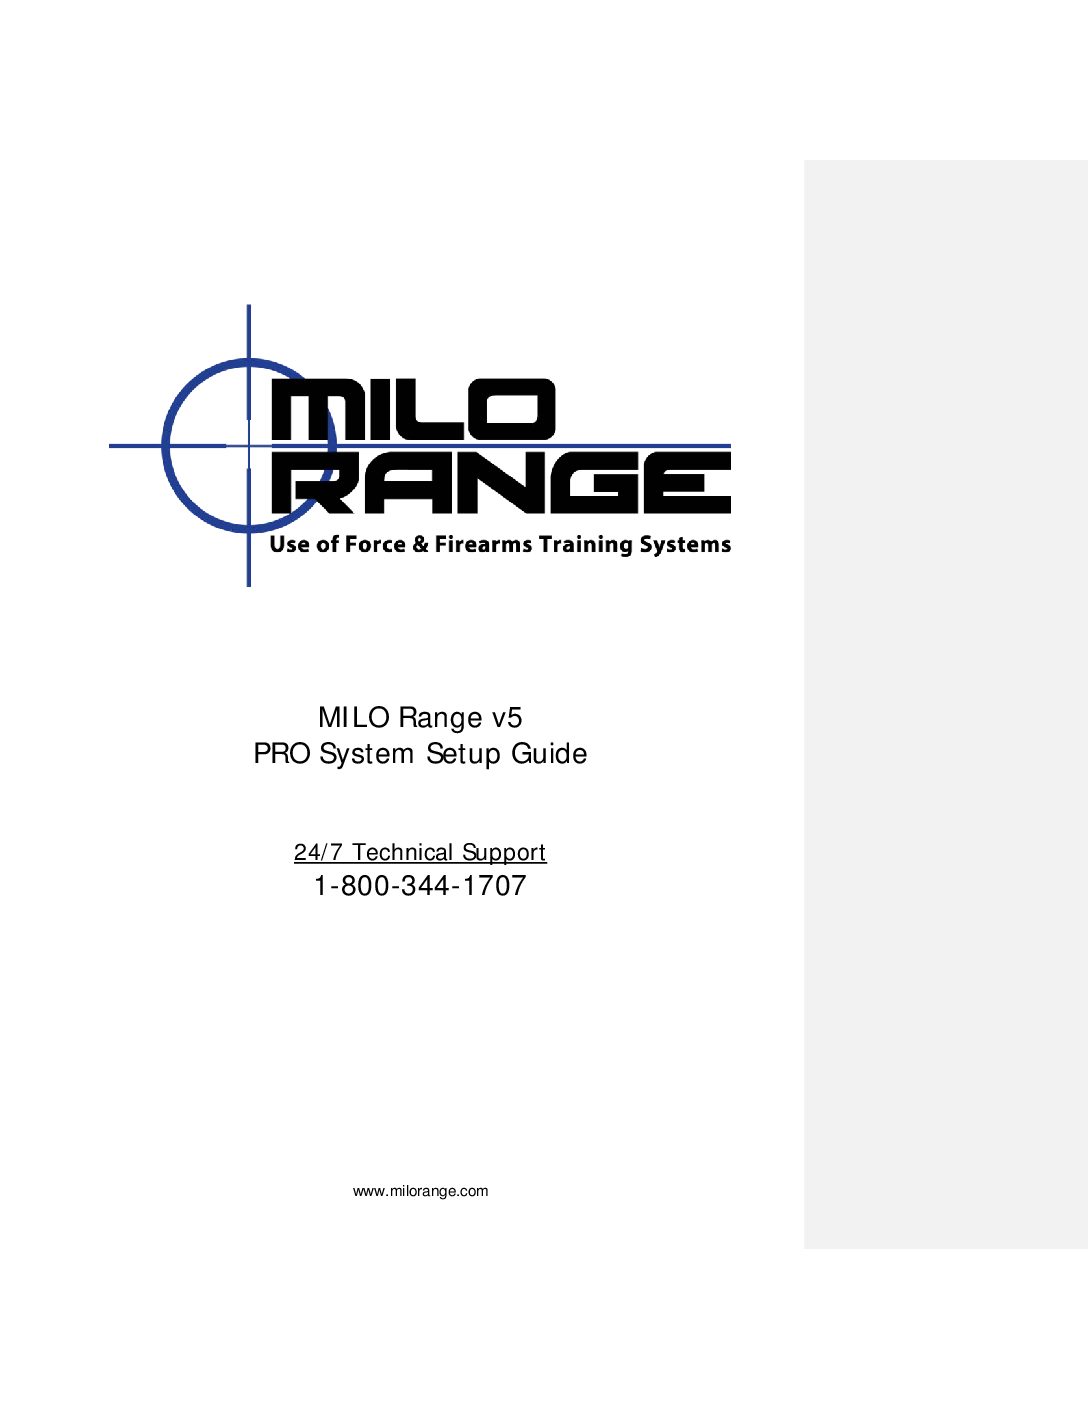 MILO Range v5 – PRO System Setup Guide